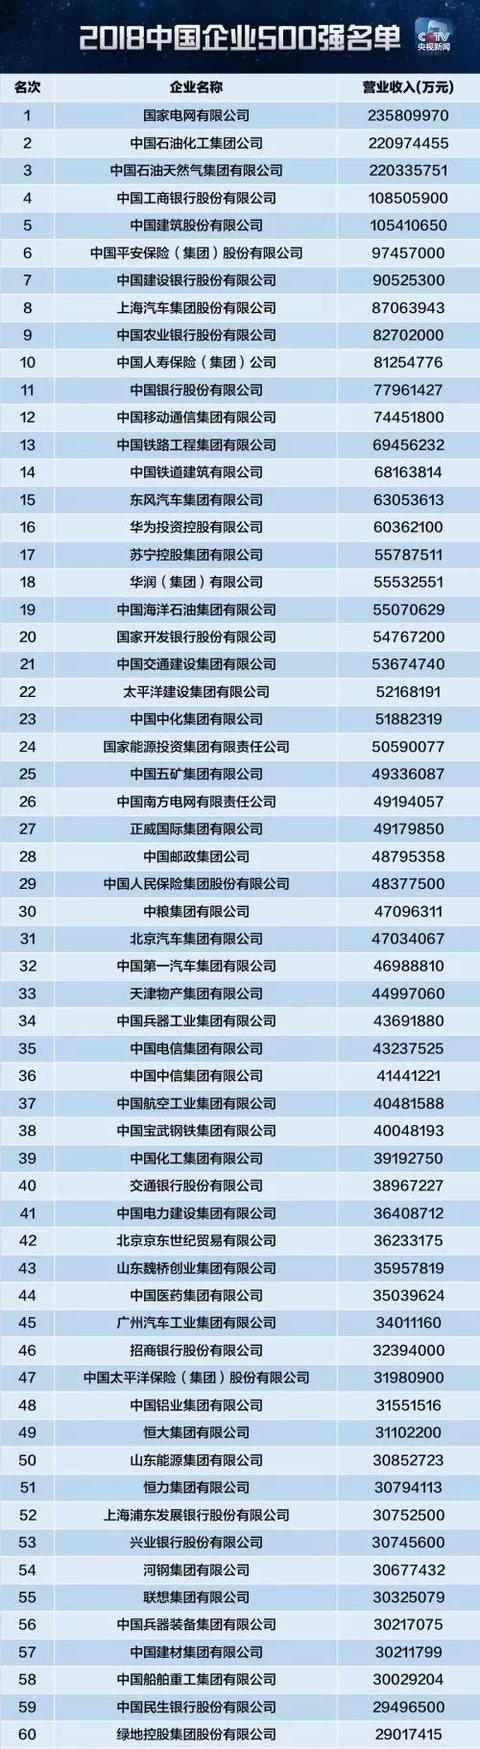 2018中国企业500强排行榜